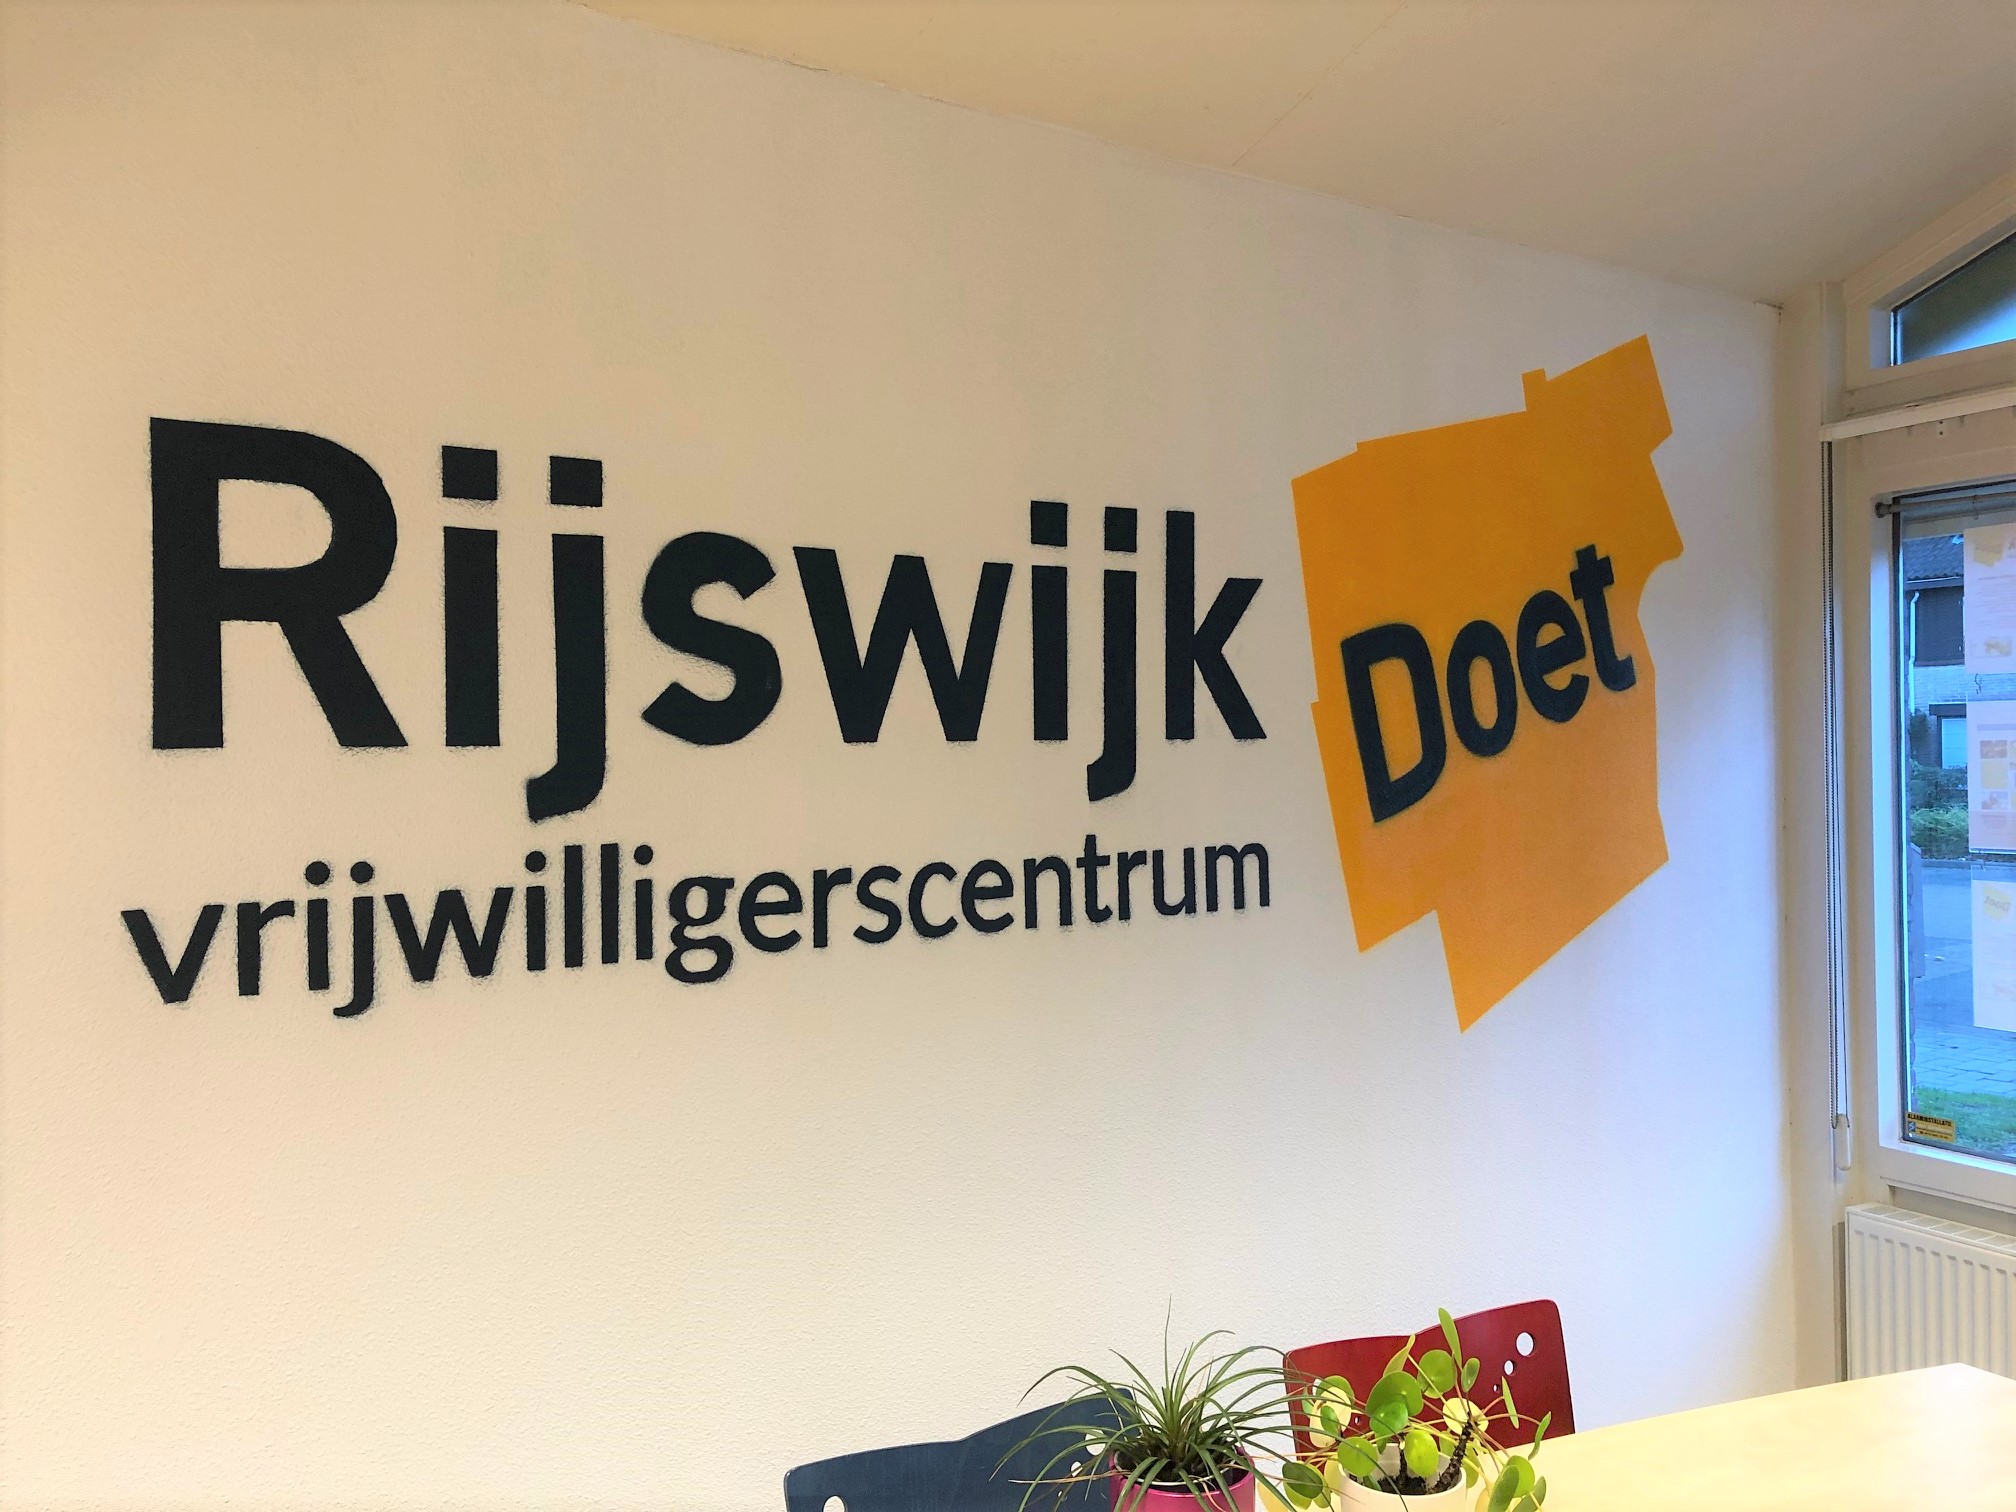 Muurschildering in kantoor van Rijswijk Doet